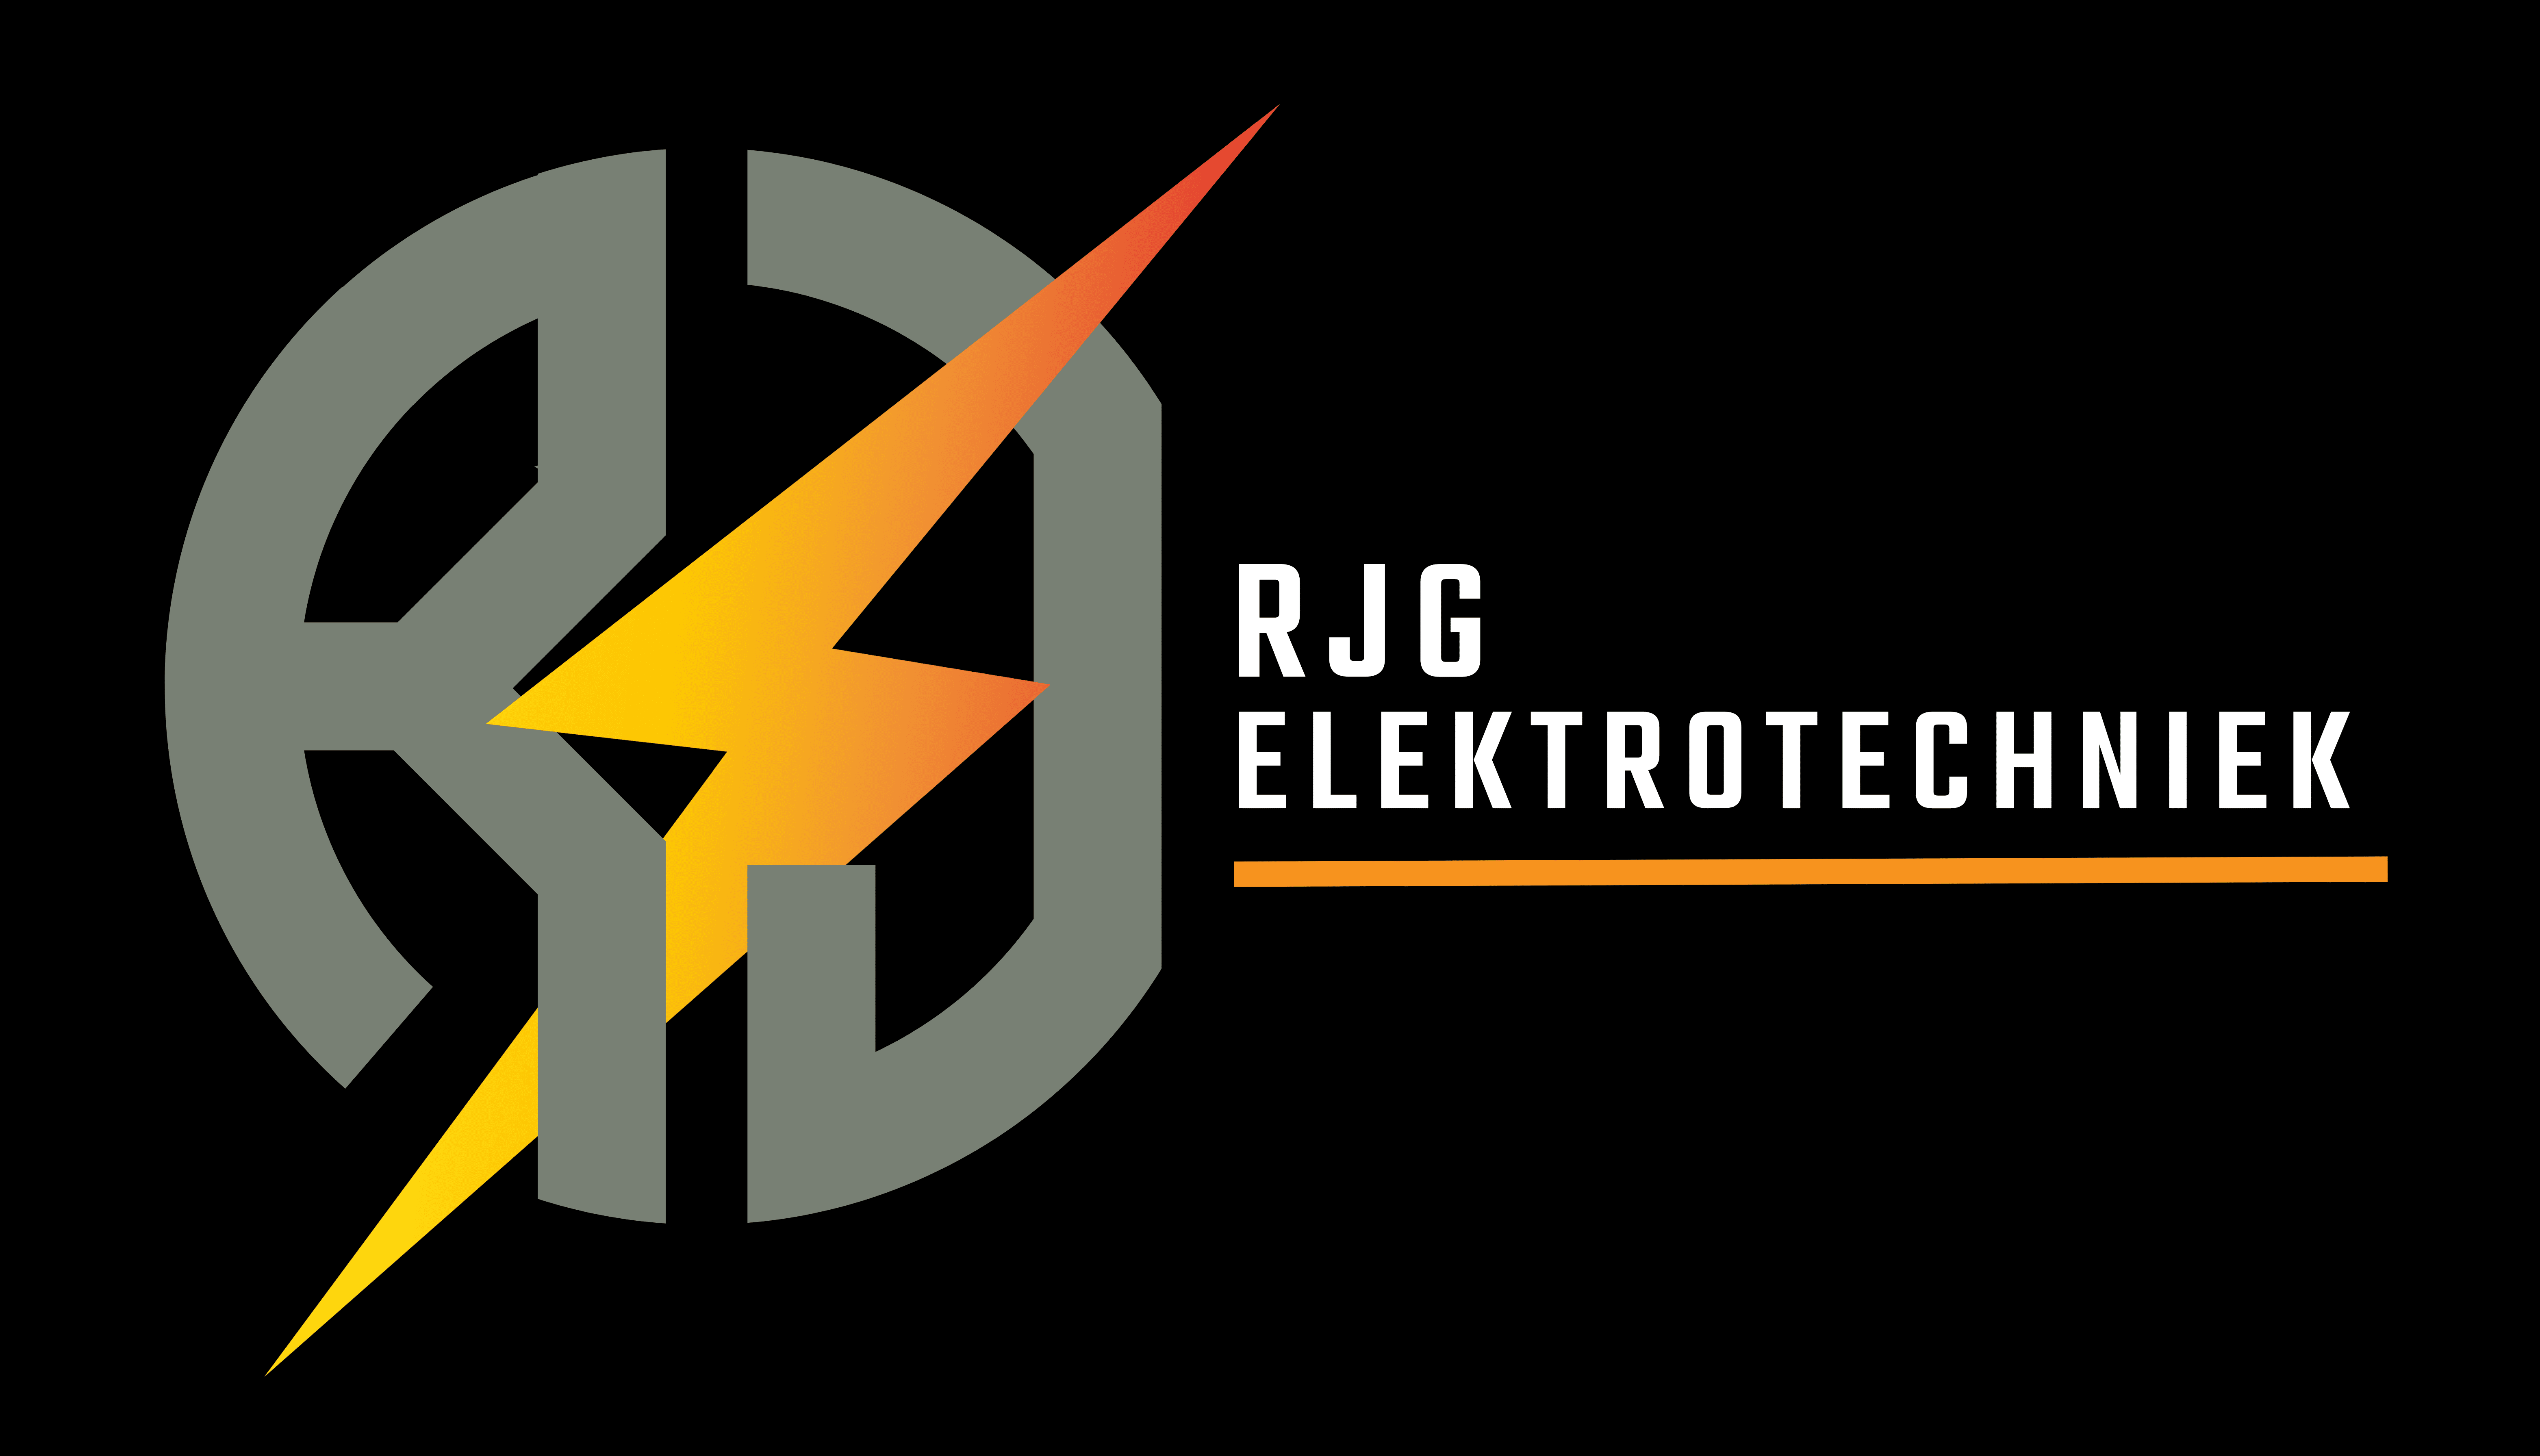 RJG elektrotechnieaak